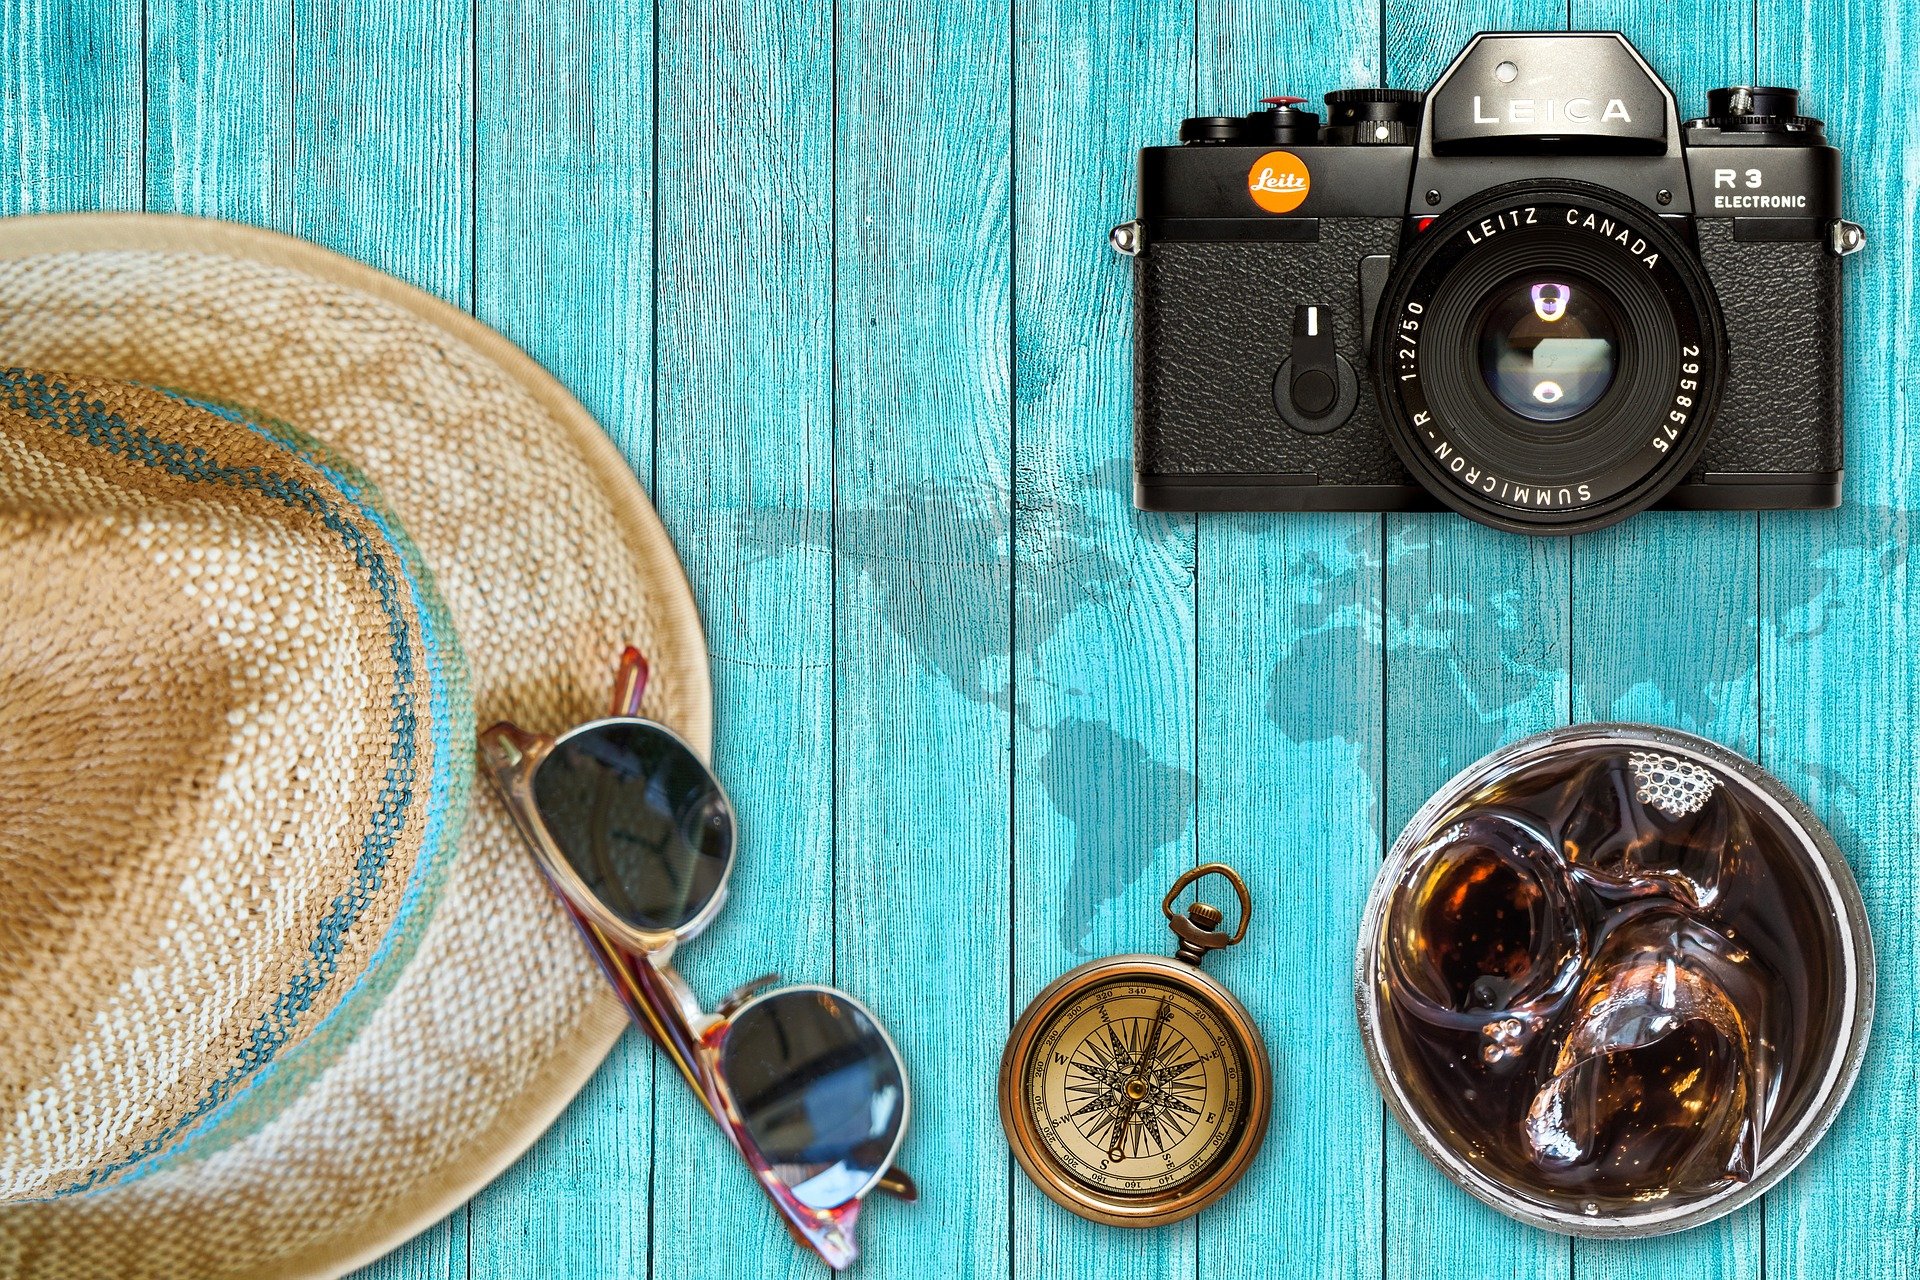 Foto: Auf Tisch liegen Kamera, Sonnenbrille, Strohhut, Kompass, Getränk mit Eiswürfeln